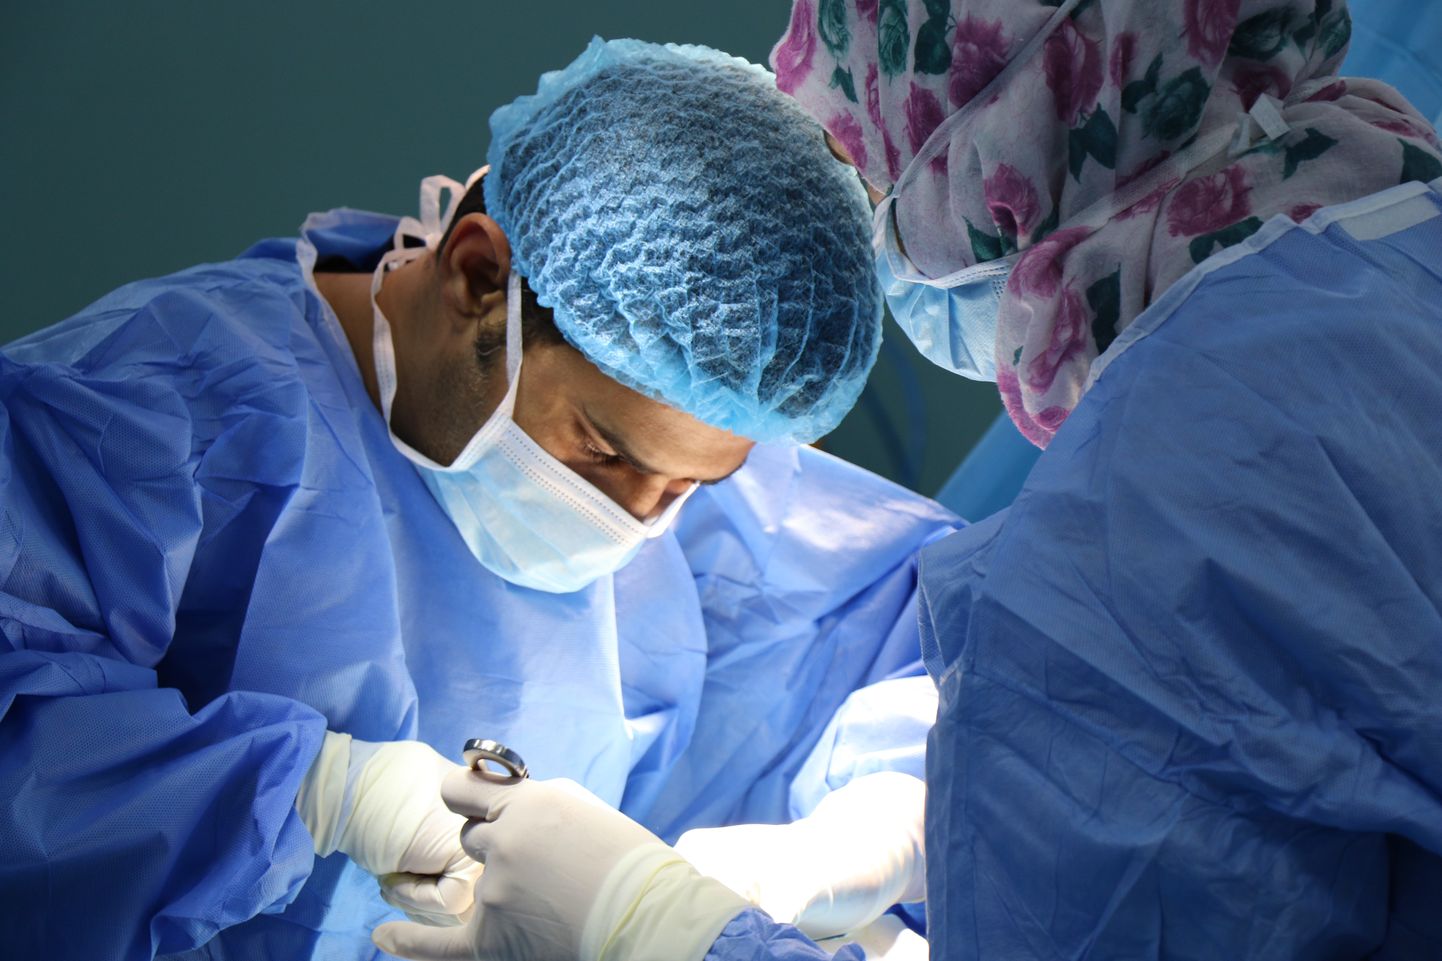 Ķirurgi operē. Ilustratīvs attēls